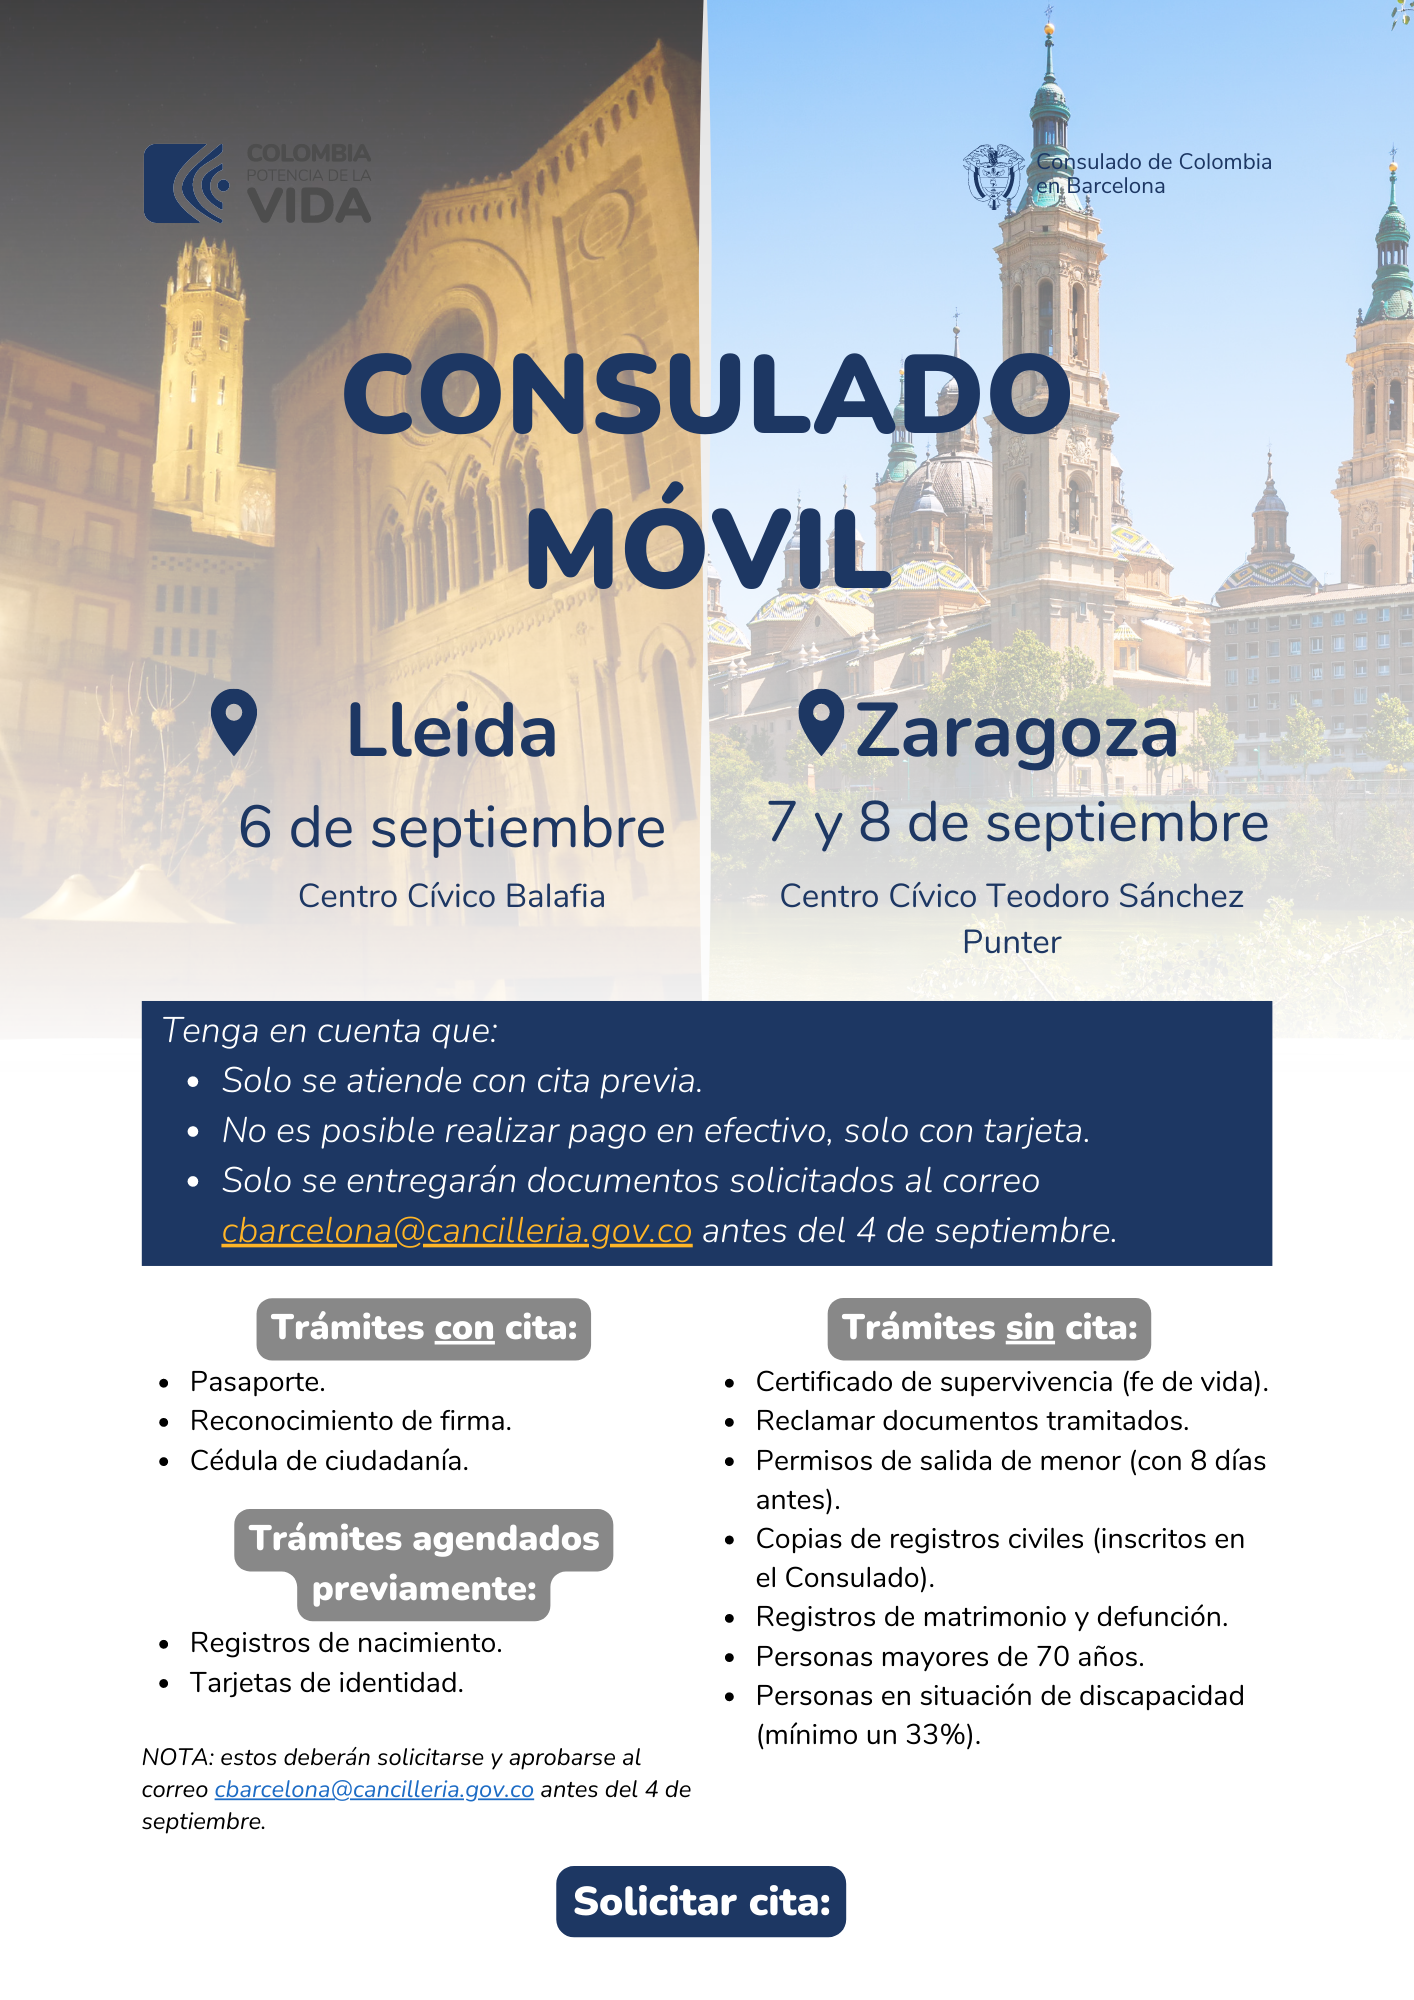 Consulado Movil Lleida y Zaragoza en septiembre